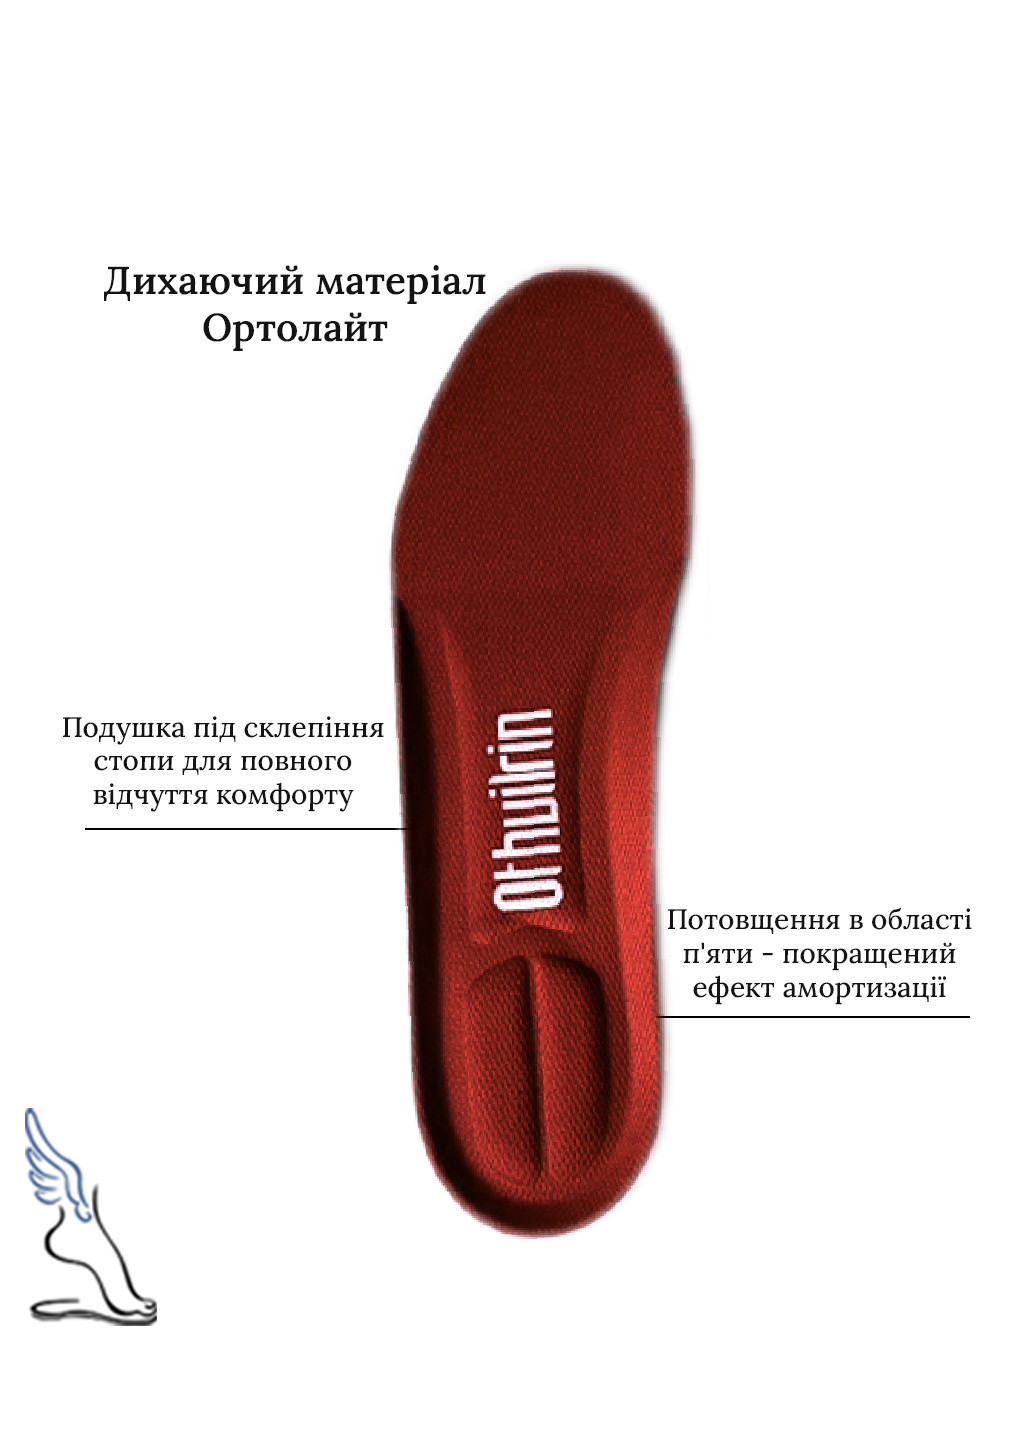 Спортивні амортизаційні устілки для взуття Ortholite No Brand (257560296)